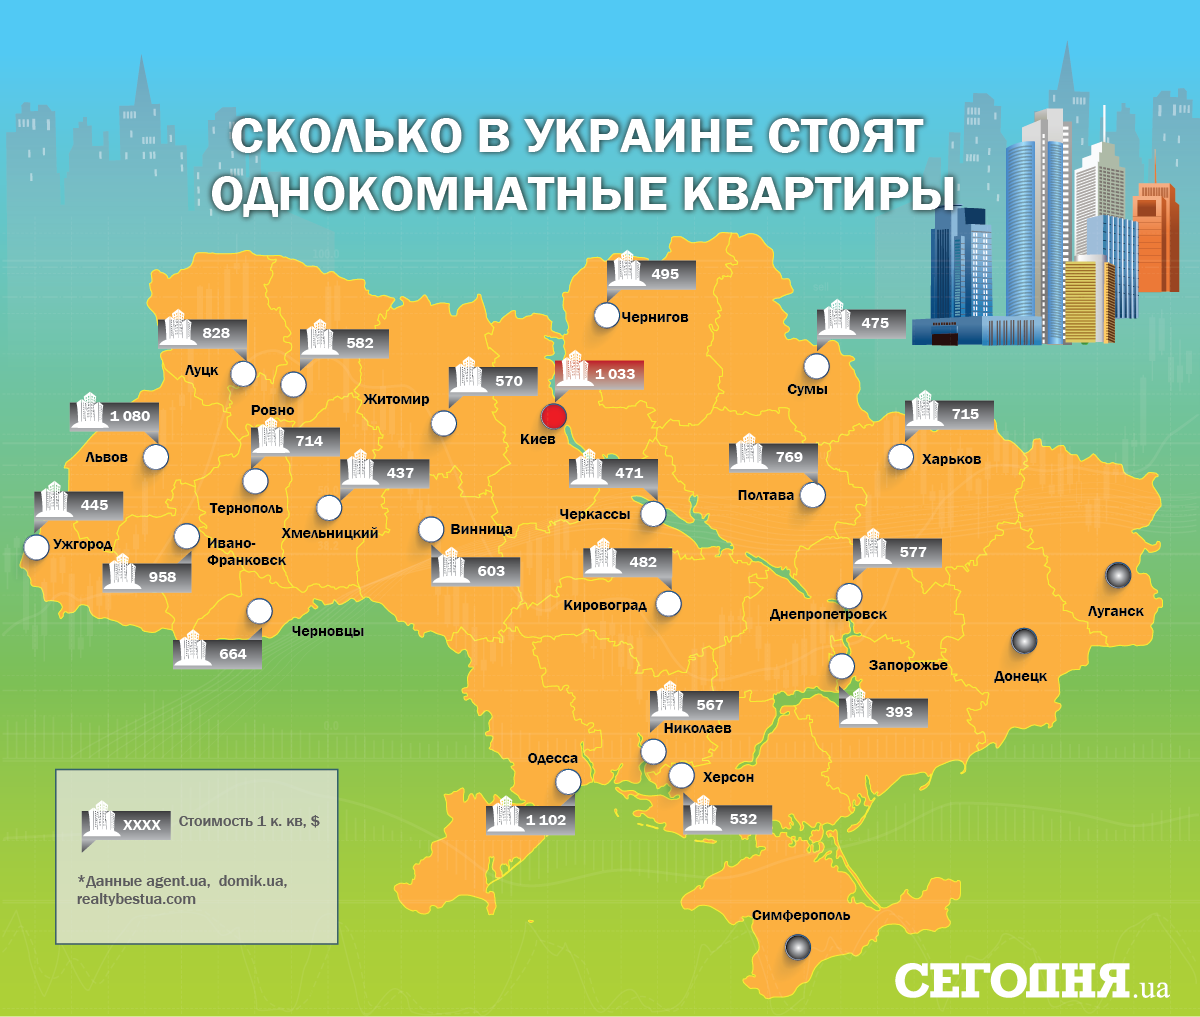 Більшість експертів вважають, що підвищення вартості квартир почнеться разом з ростом української економіки